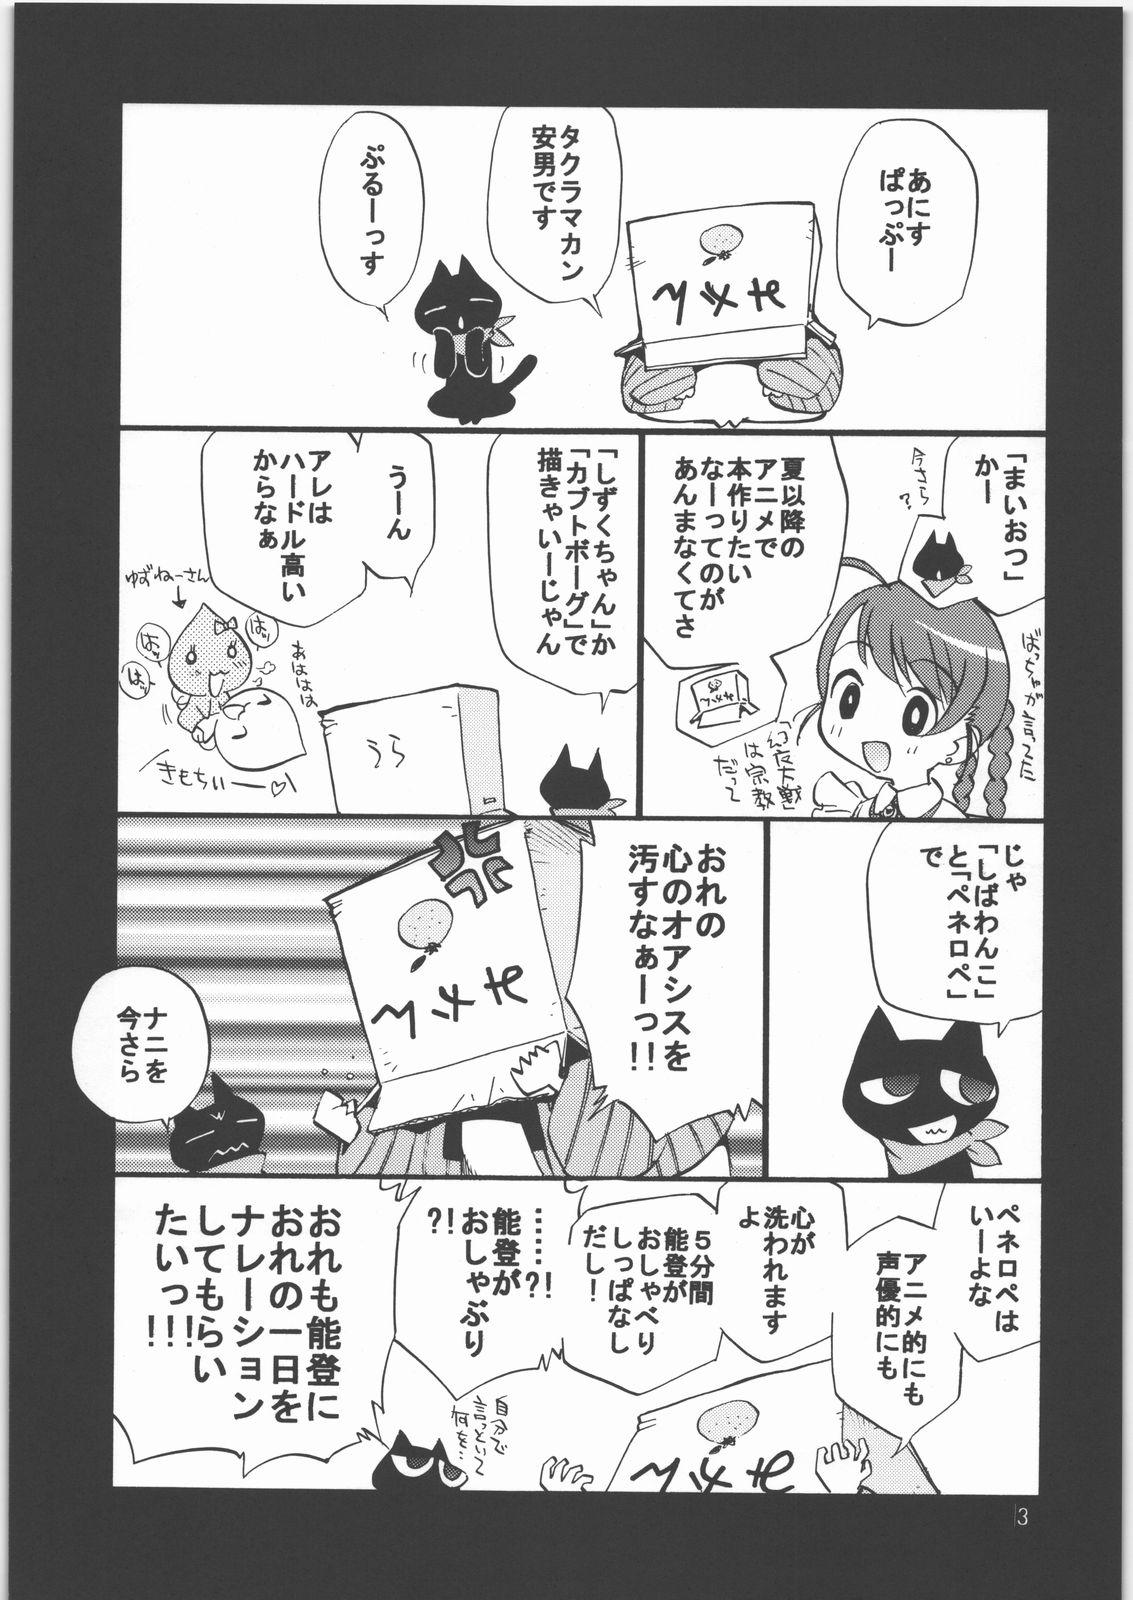 She Maiotsu Paiotsu - Mai otome Tesao - Page 2